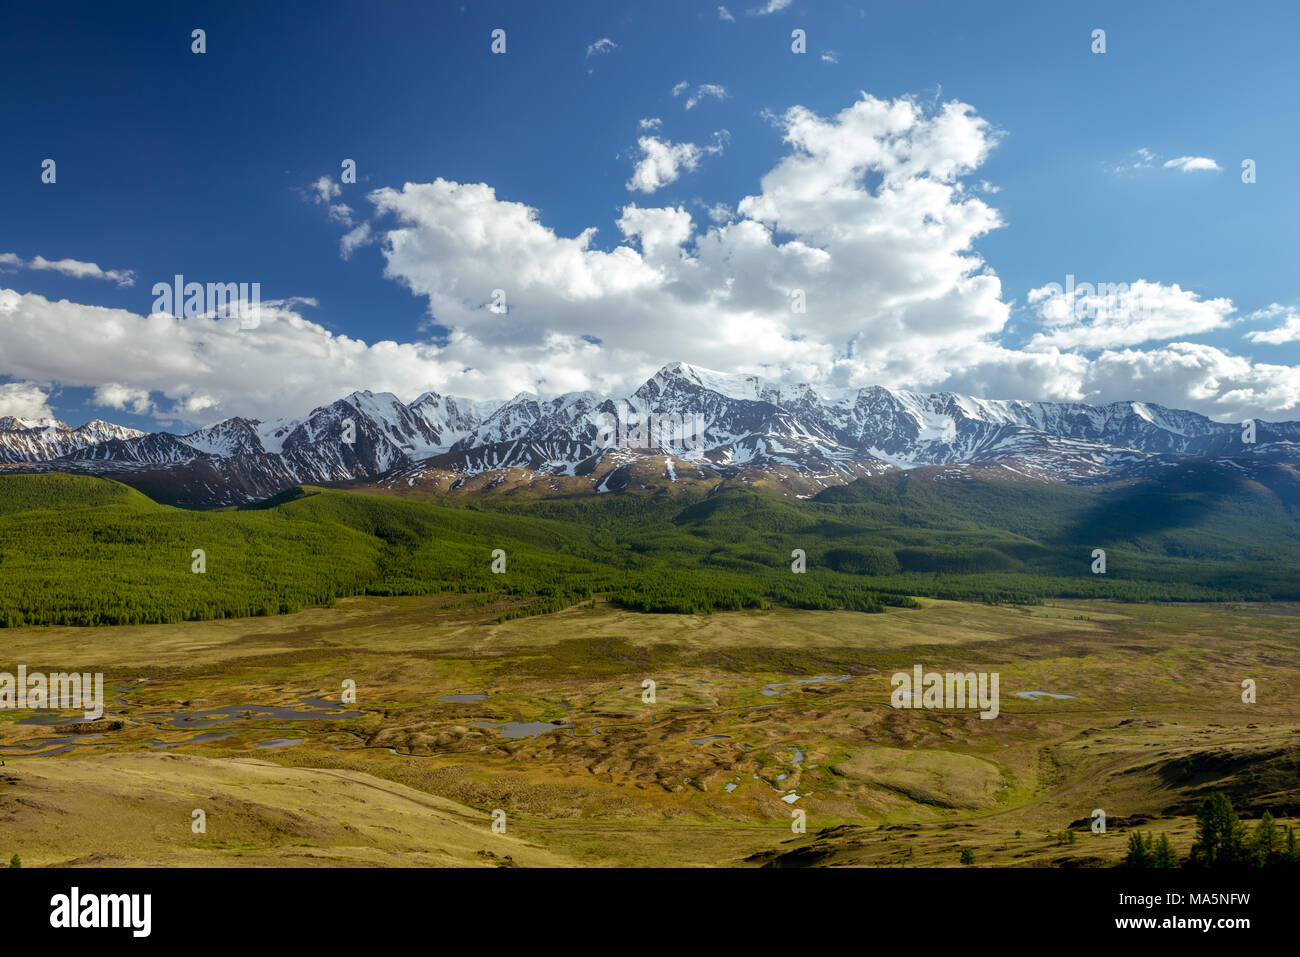 Vue aérienne pour les glaciers des montagnes de l'Altaï Sibérie Russie Banque D'Images